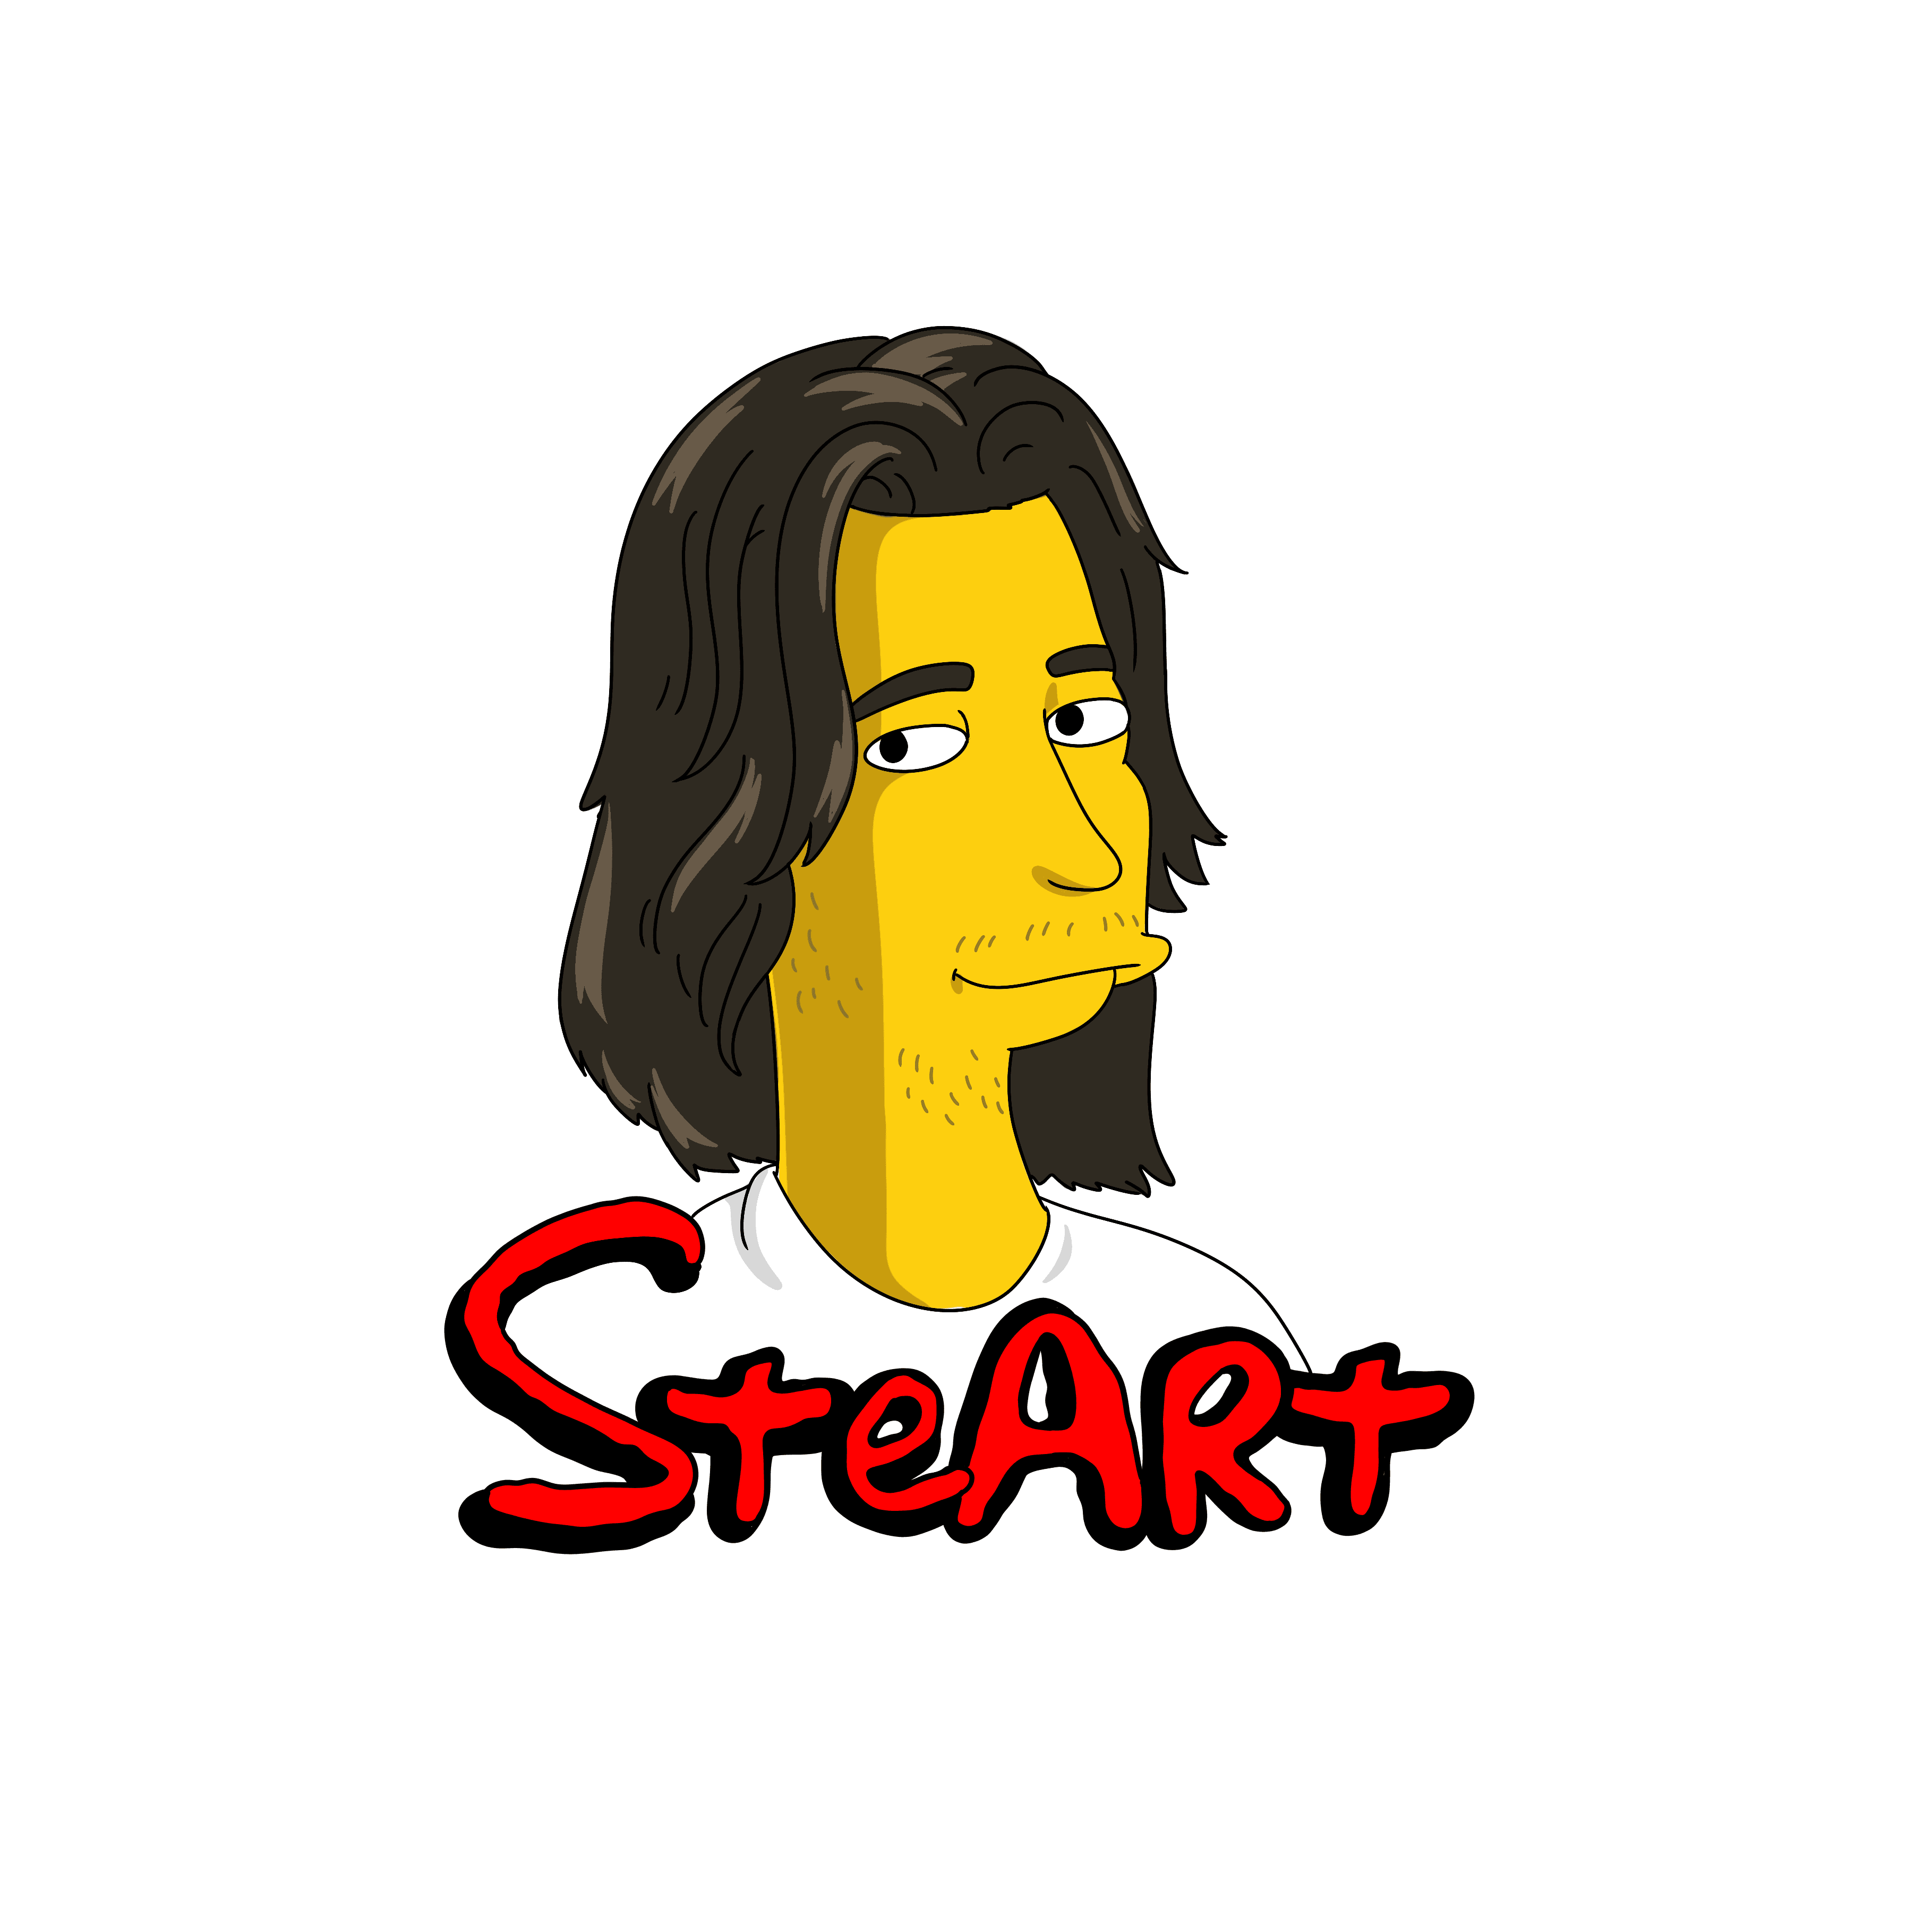 steart__